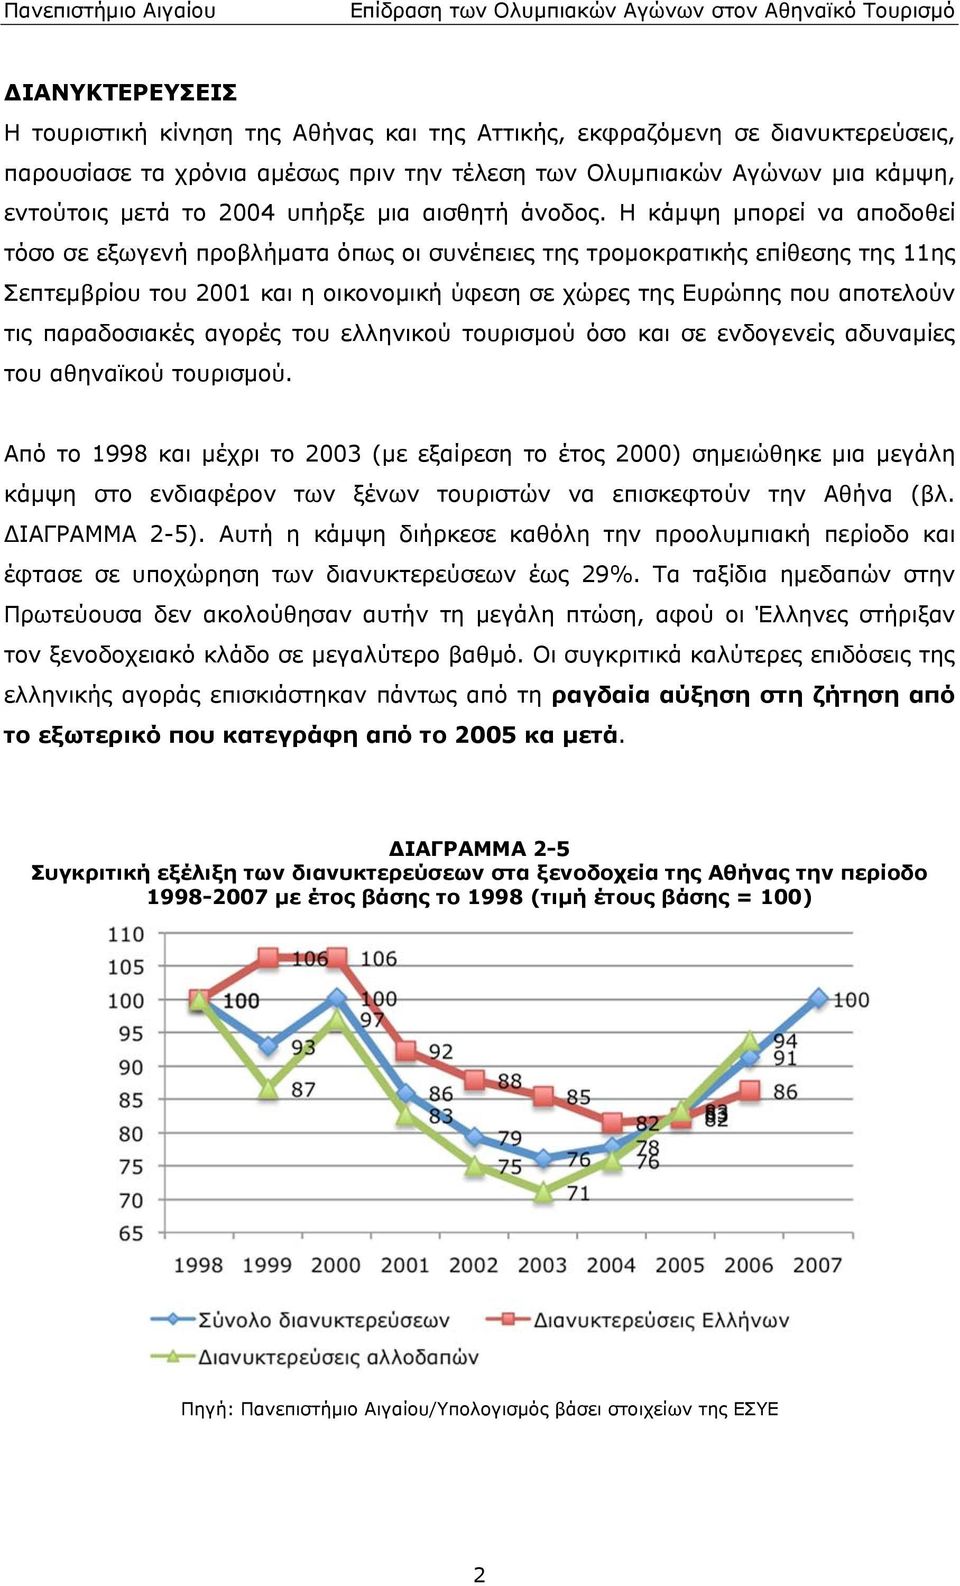 που αποτελούν τις παραδοσιακές αγορές του ελληνικού τουρισμού όσο και σε ενδογενείς αδυναμίες του αθηναϊκού τουρισμού Από το 1998 και μέχρι το 2003 (με εξαίρεση το έτος 2000) σημειώθηκε μια μεγάλη